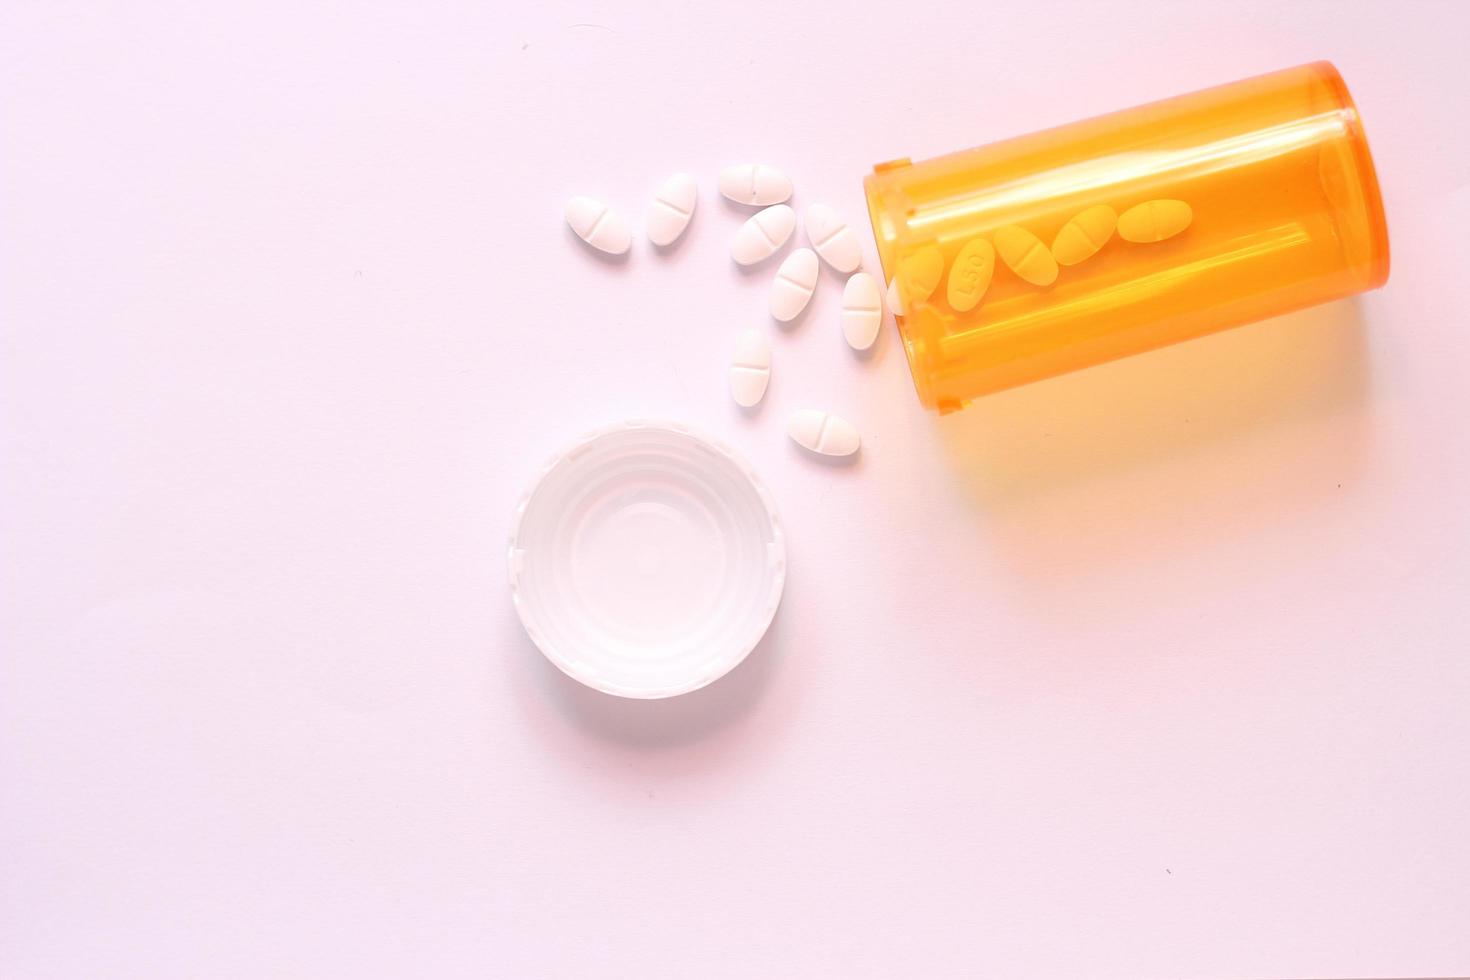 ovale Pillen und orangefarbene Tablettenfläschchen waren auf der weißen Tischplatte ausgebreitet. foto